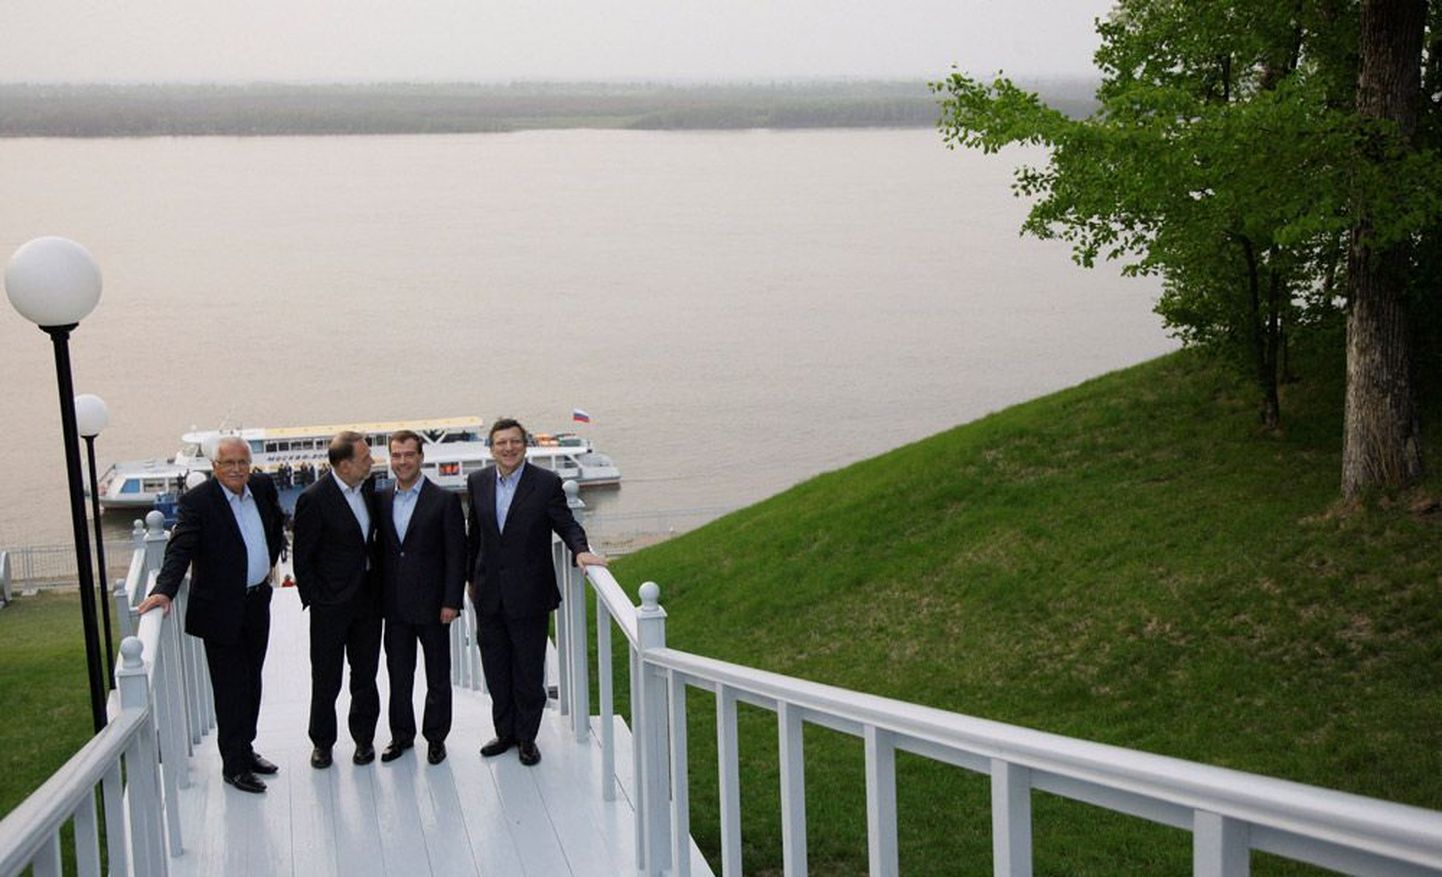 Enne tõsisemaid vestlusi viis võõrustajaks olnud Venemaa president Dmitri Medvedev (paremalt teine) oma kaugelt Euroopast saabunud külalised Tšehhi presidendi Václav Klausi (vasakult esimene), ELi välispoliitikajuhi Javier Solana (vasakult teine) ja Euroopa Komisjoni juhi José Manuel Barroso (paremalt esimene) laevaga suurele Amuuri jõele lõbusõidule.